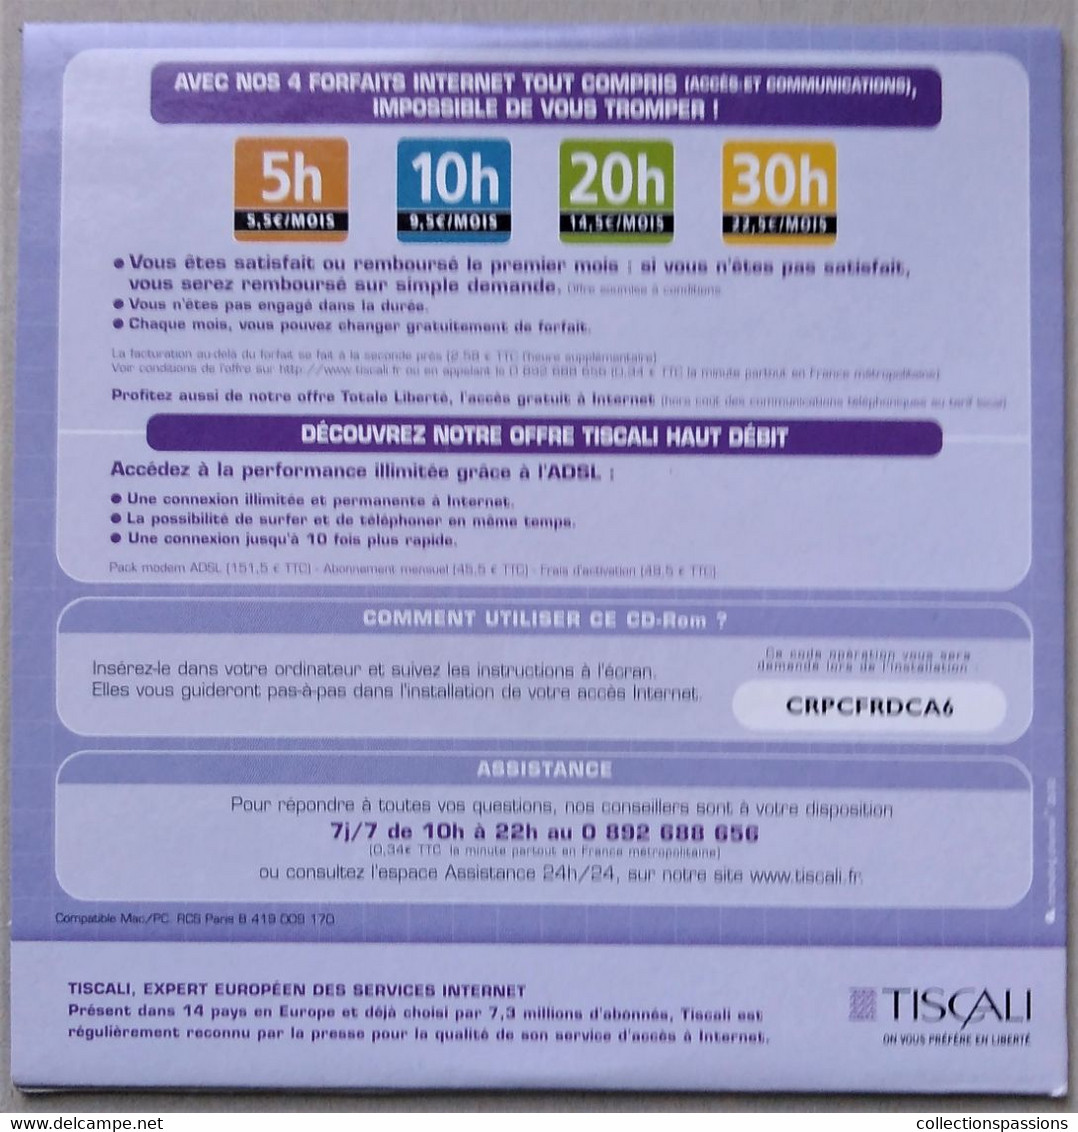 - Pochette CD ROM De Connexion Internet - TISCALI - - Connection Kits